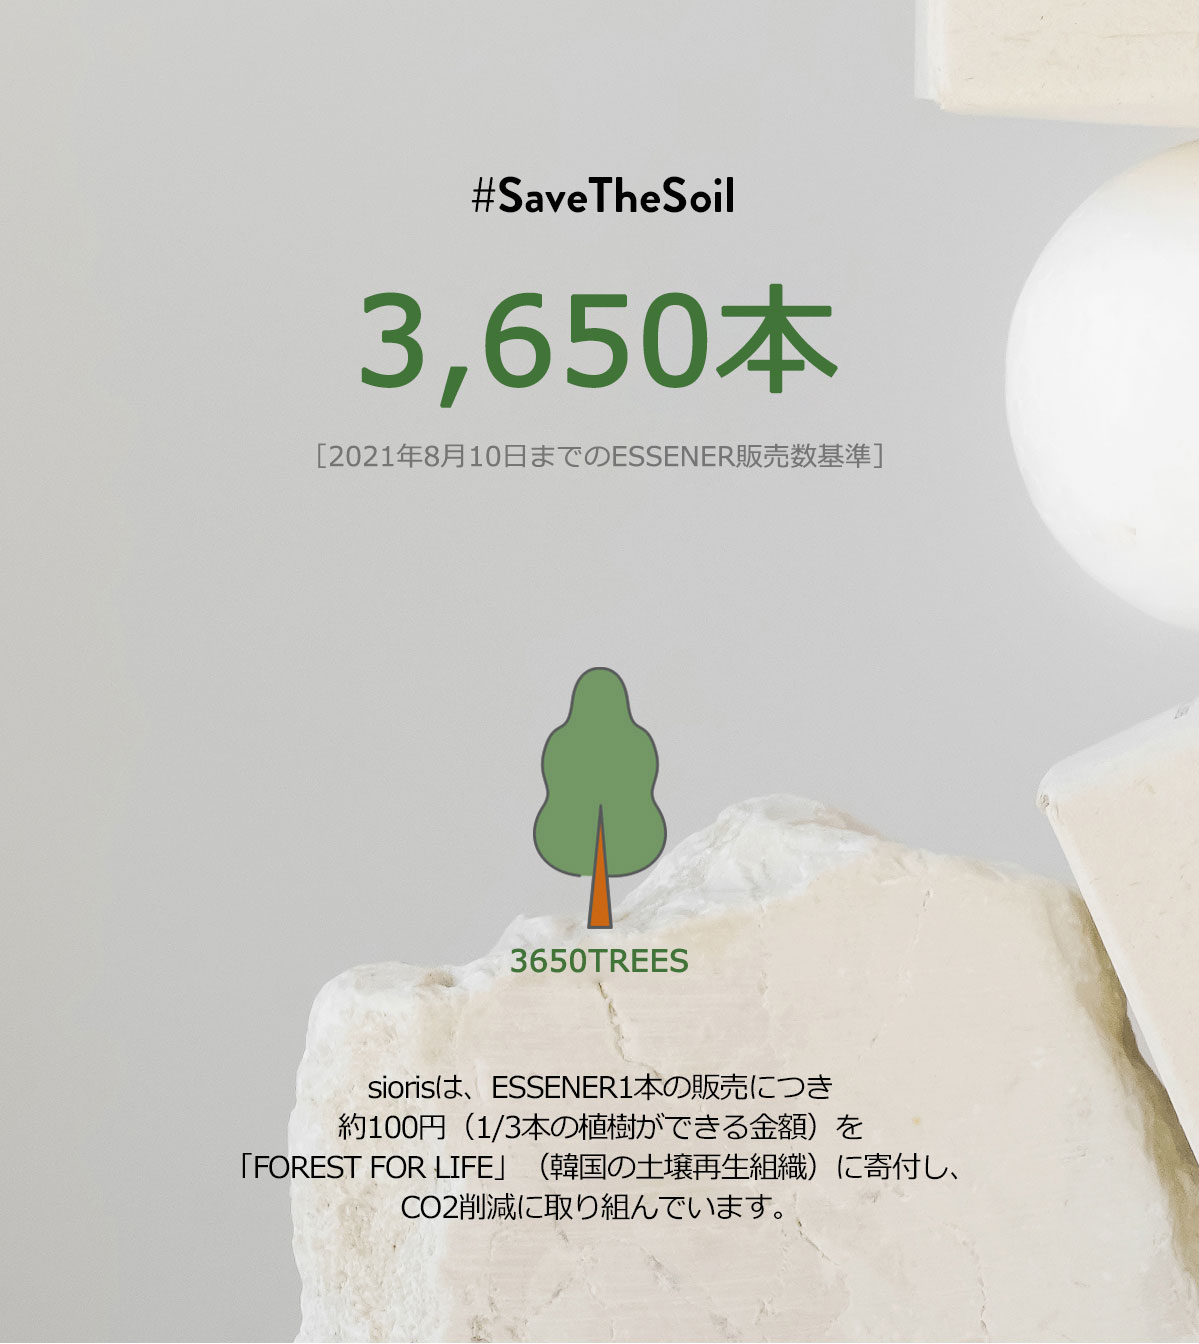 siorisは、ESSENER1本の販売につき約100円（1/3本の植樹ができる金額）を「FOREST FOR LIFE」（韓国の土壌再生組織）に寄付し、CO2削減に取り組んでいます。